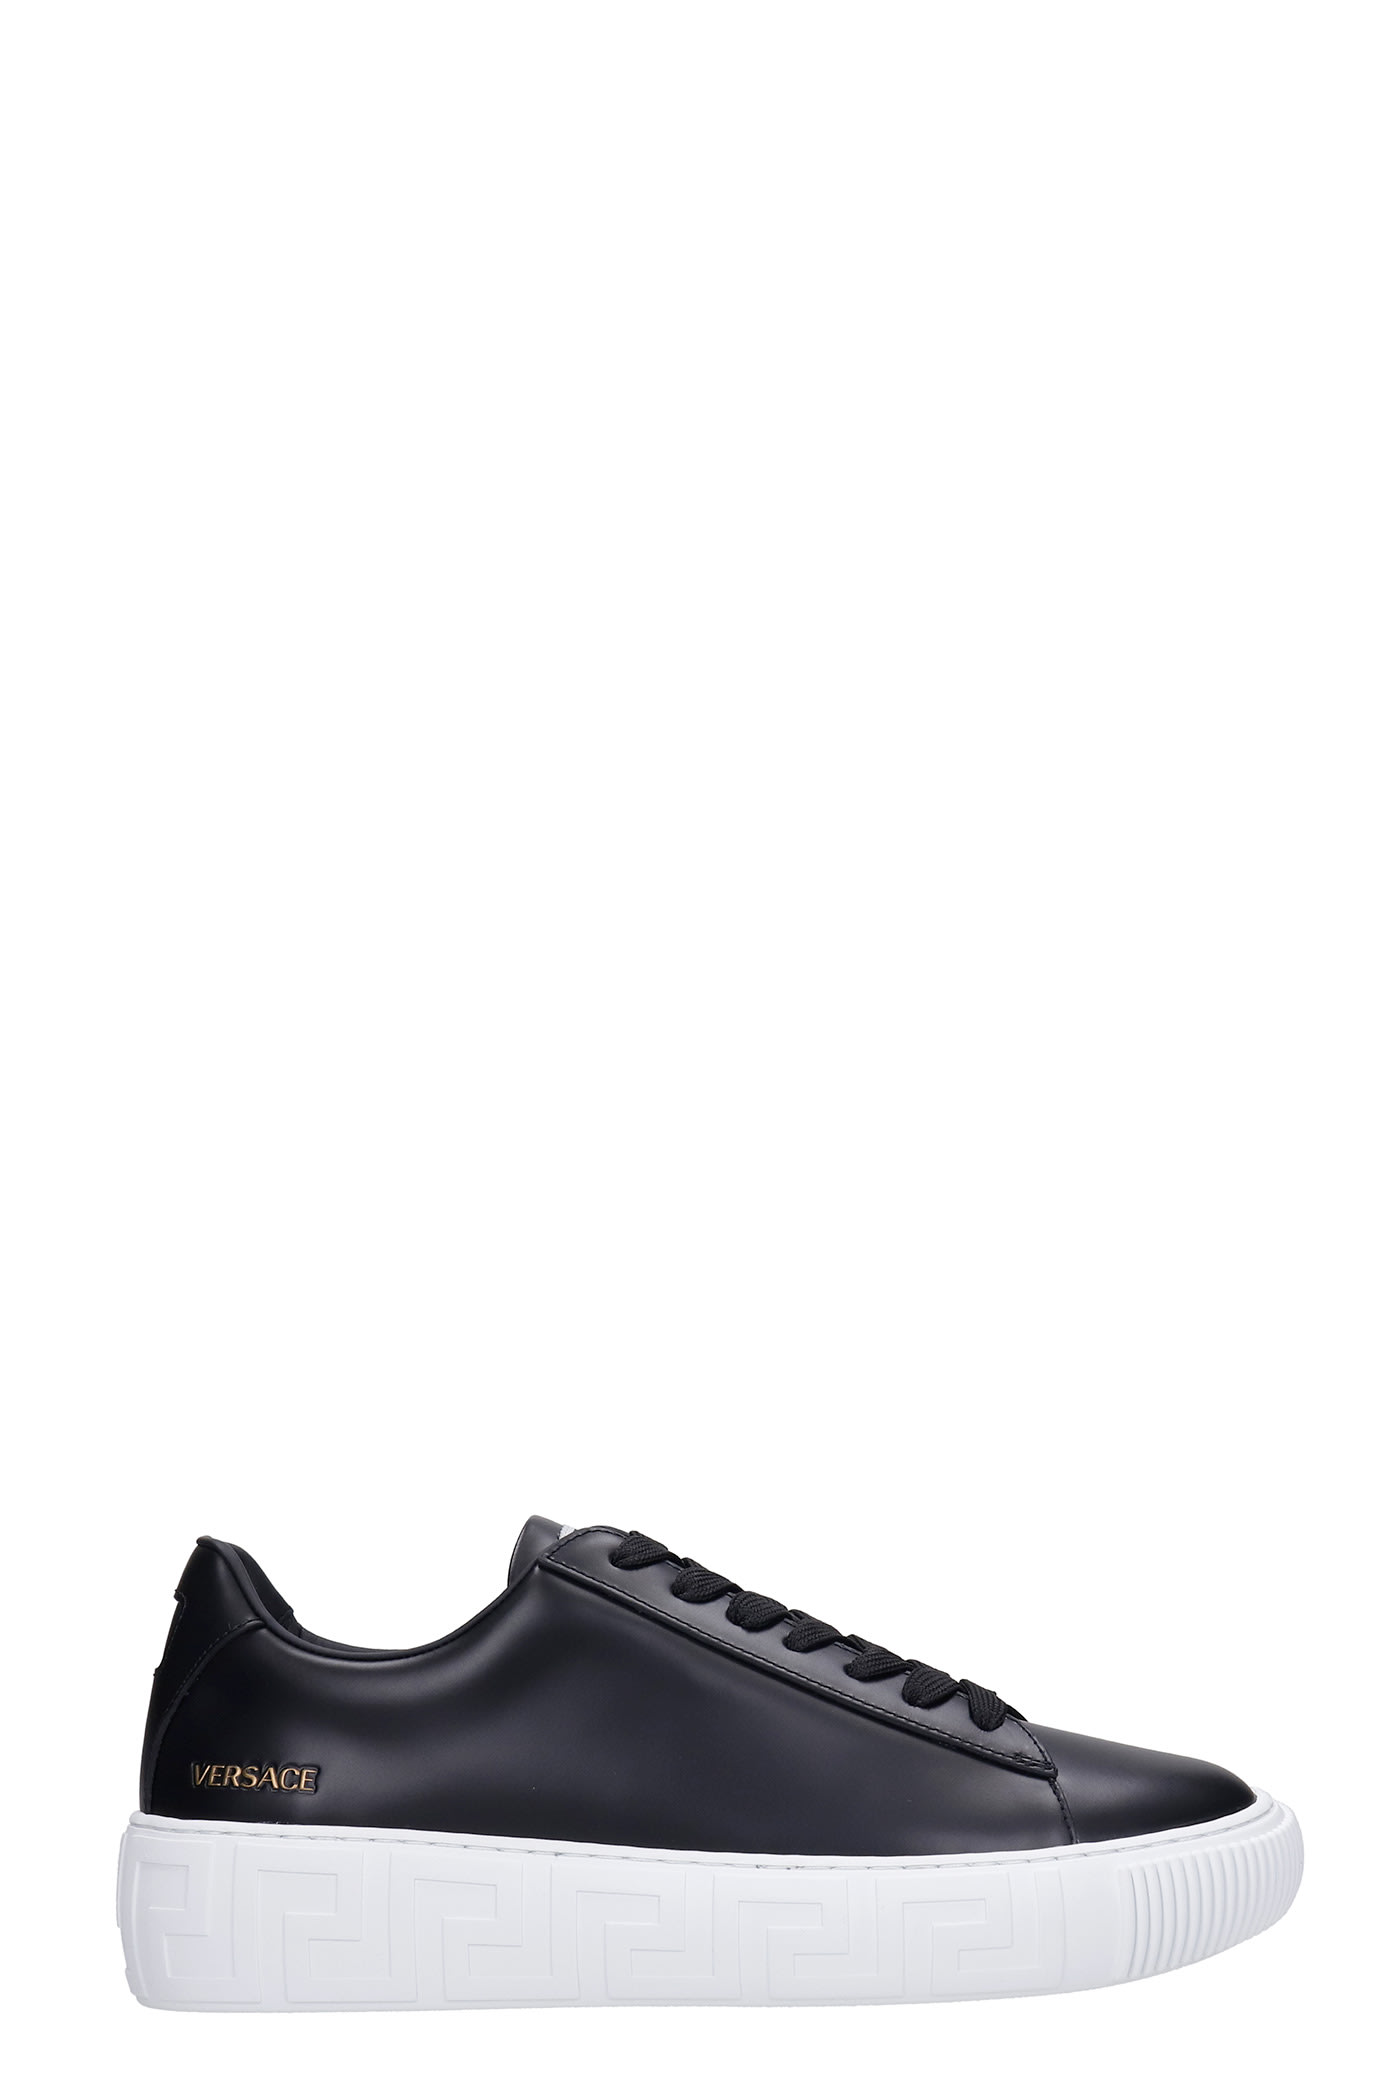 Versace Greca Sneakers In Black Leather